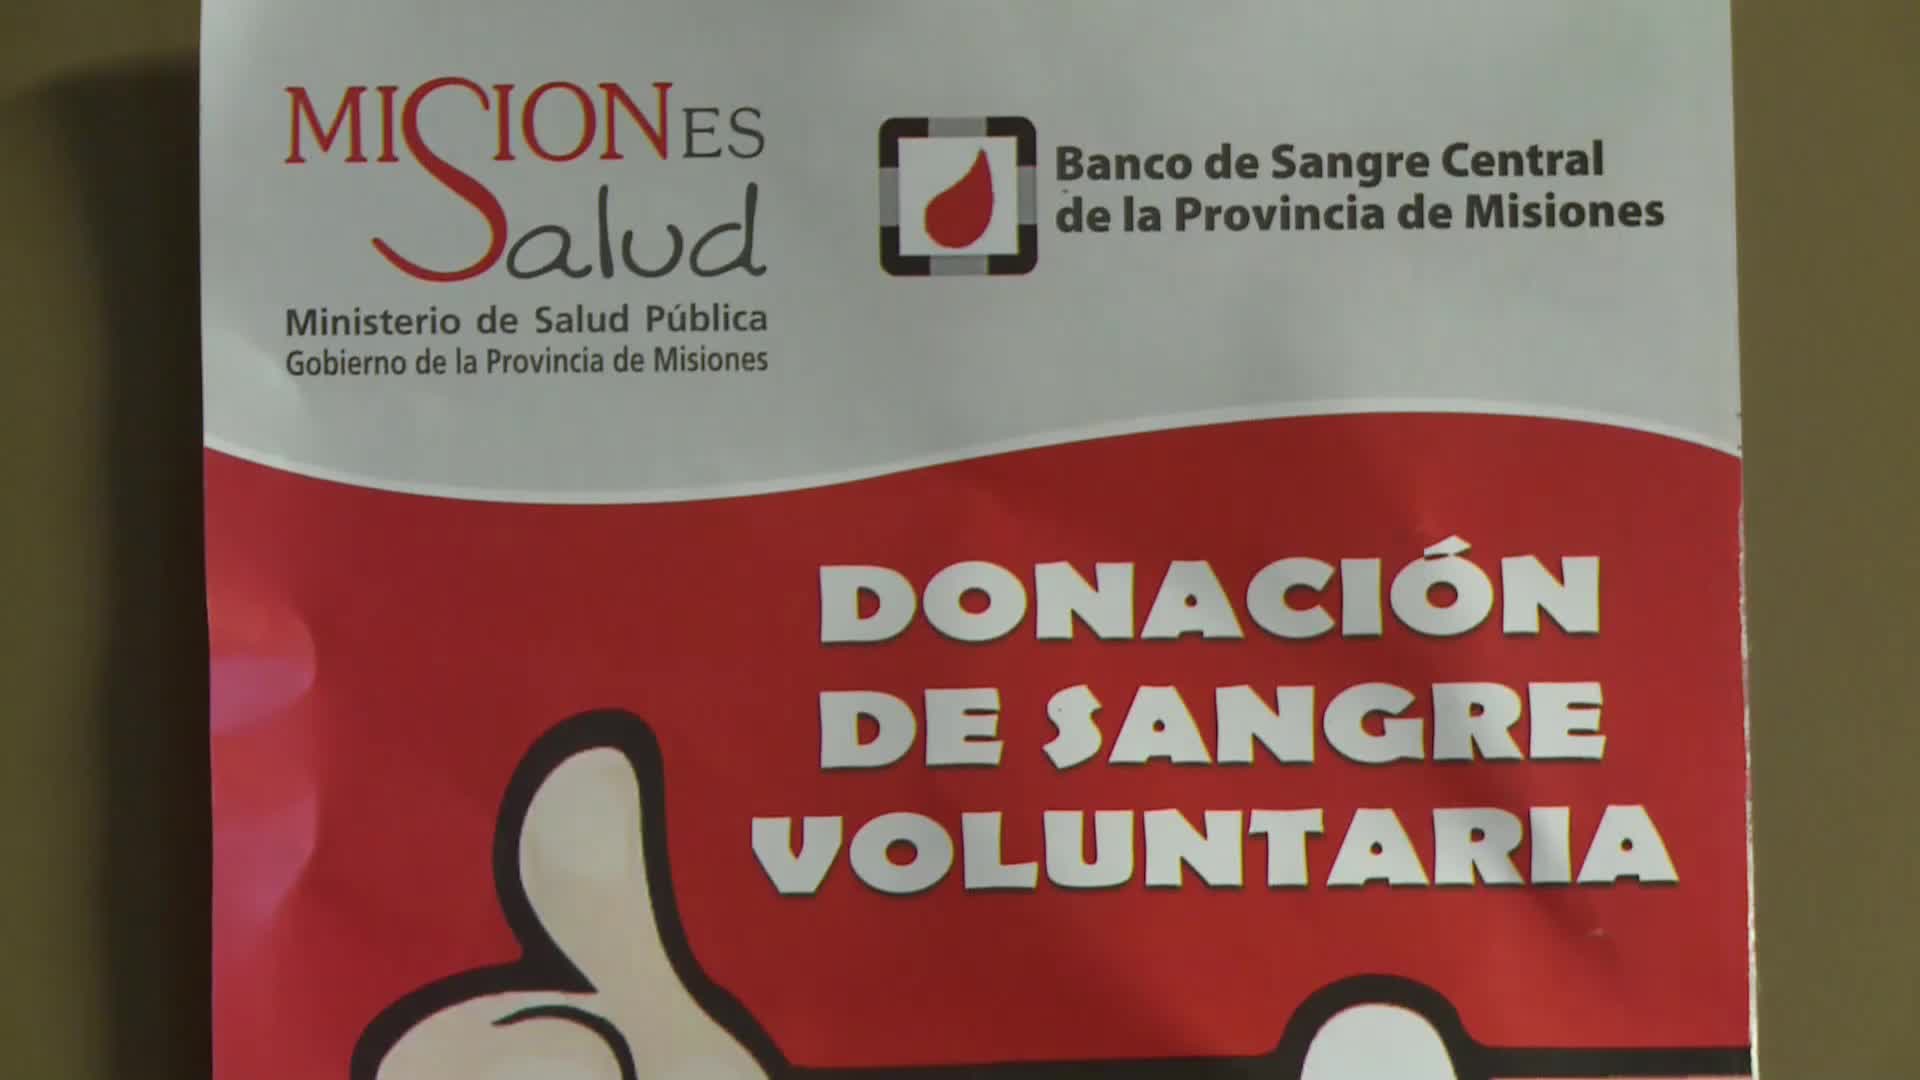 Mañana de 9 a 17 hs campaña de donación de sangre en el Instituto Santa María de las Misiones